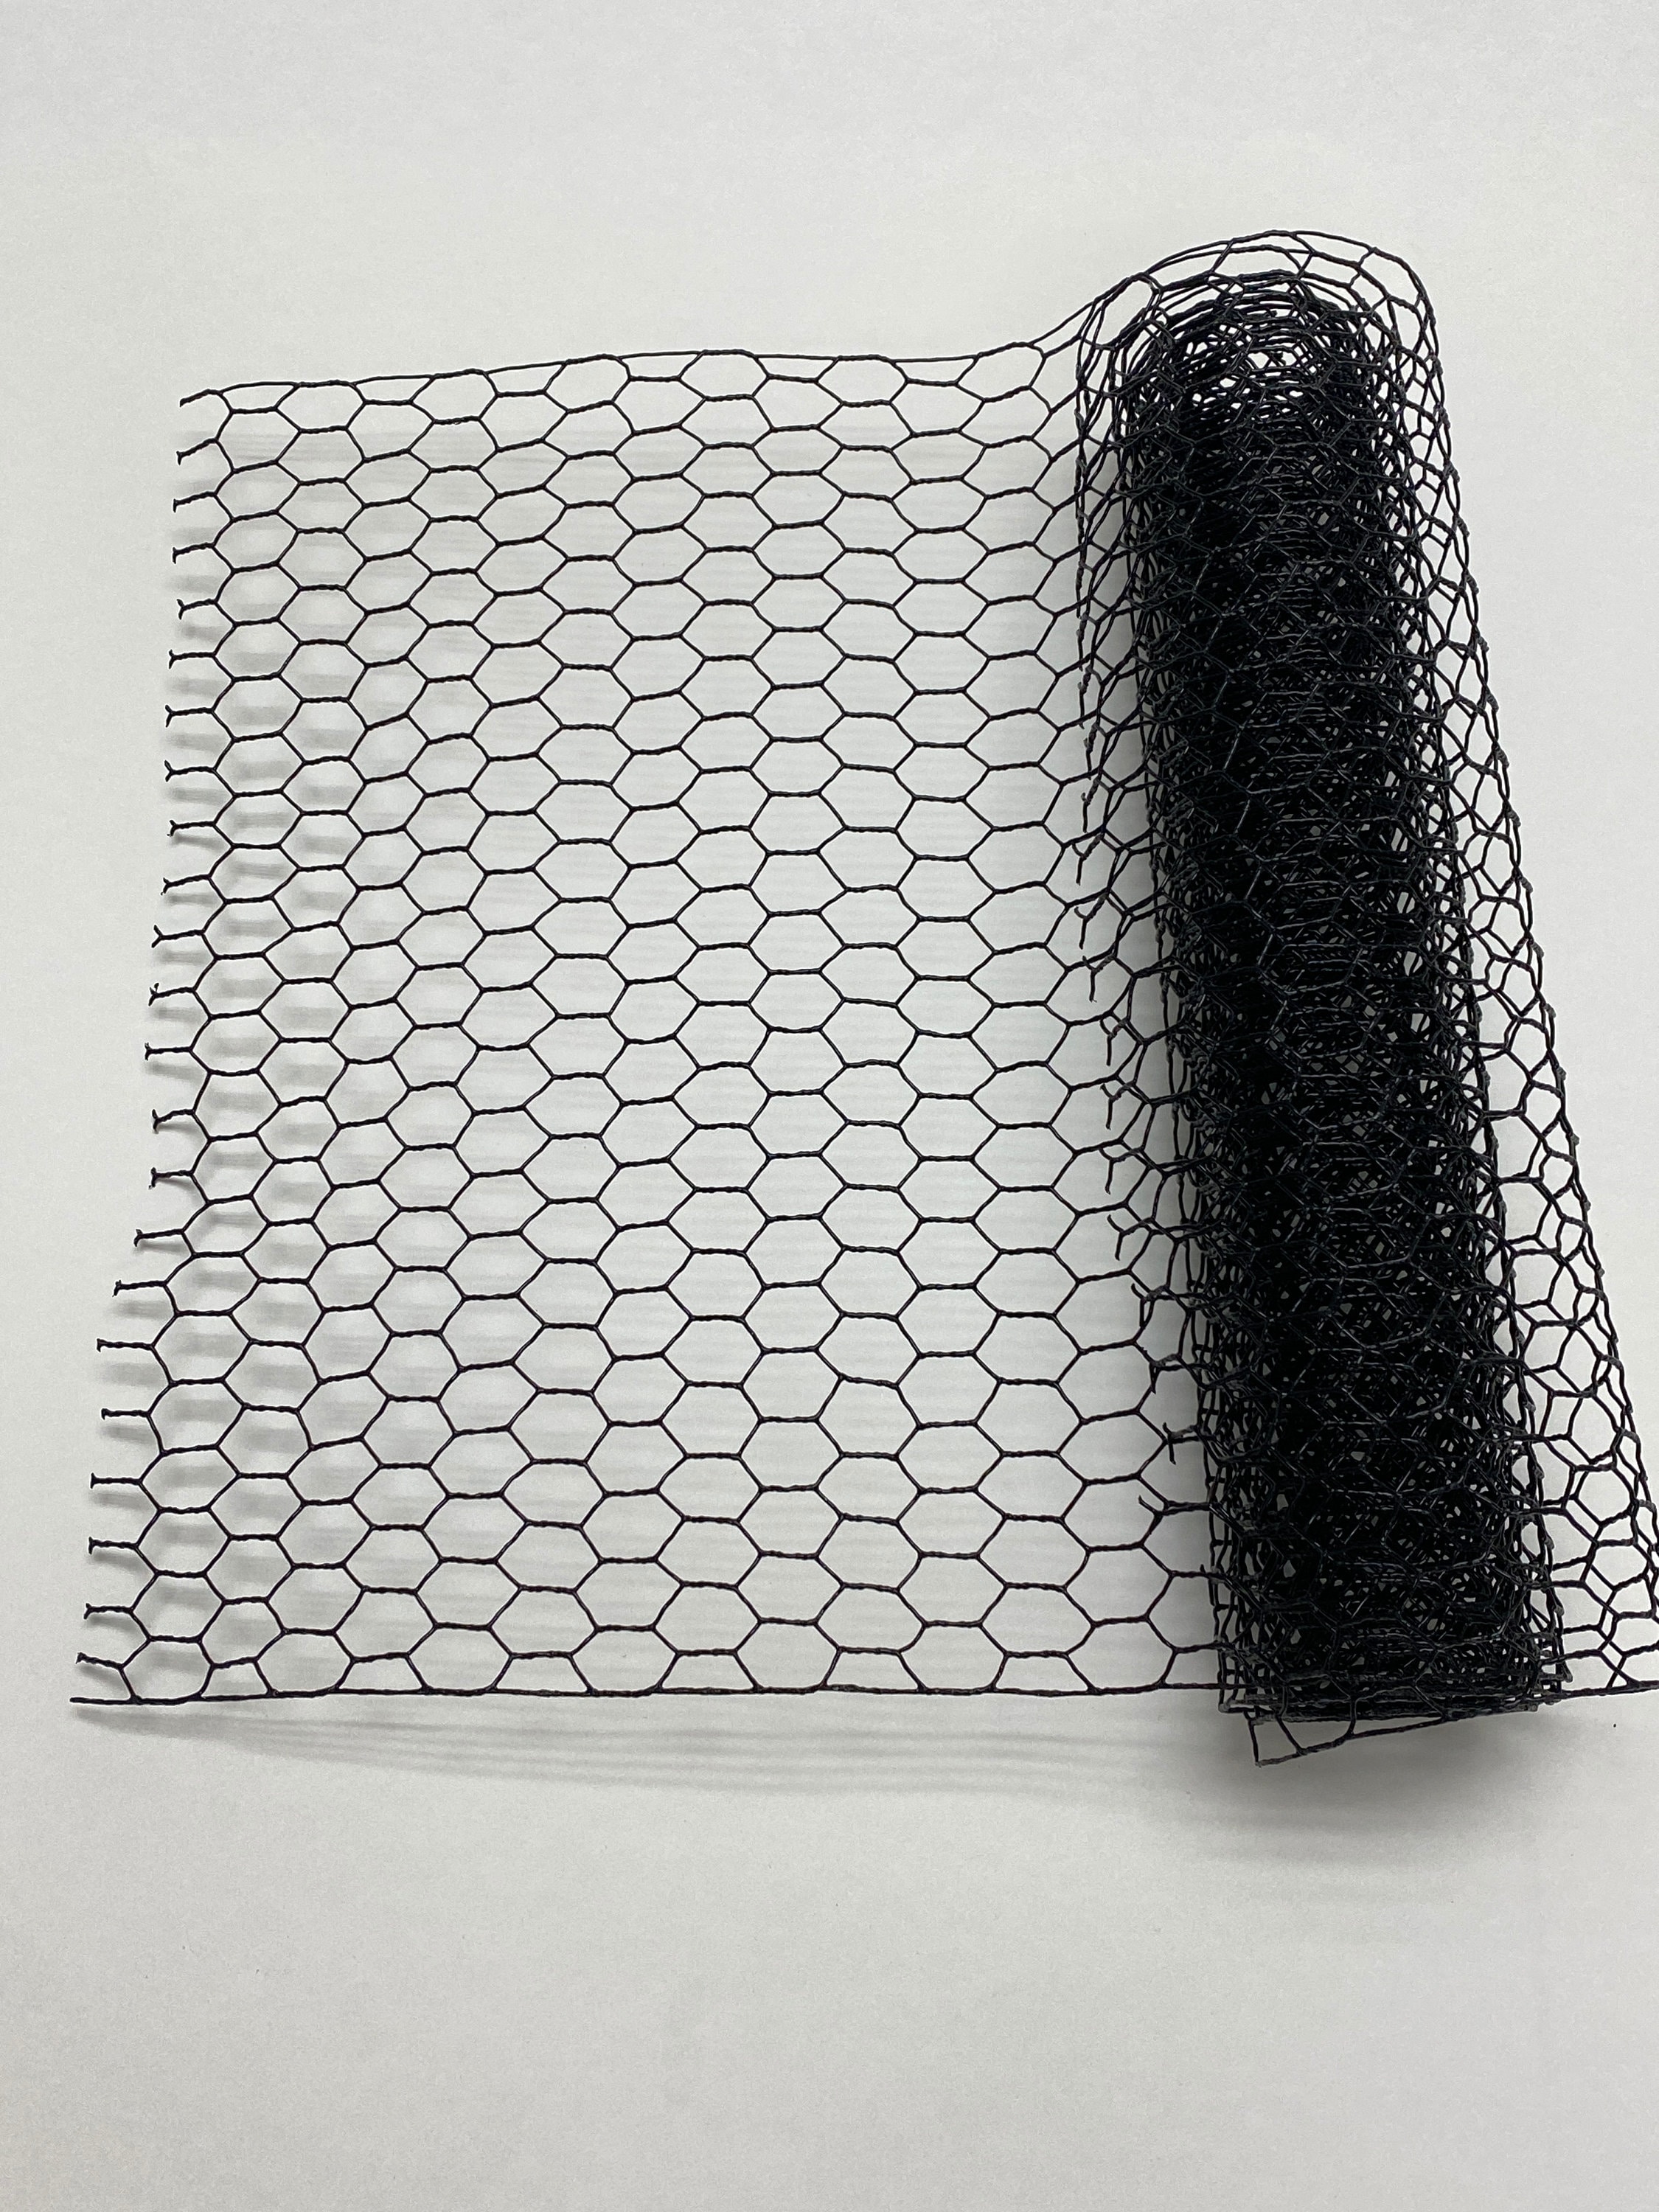 Wire Net Black Chicken 13 X 40 Sheet Galvanized Hexagonal Frame